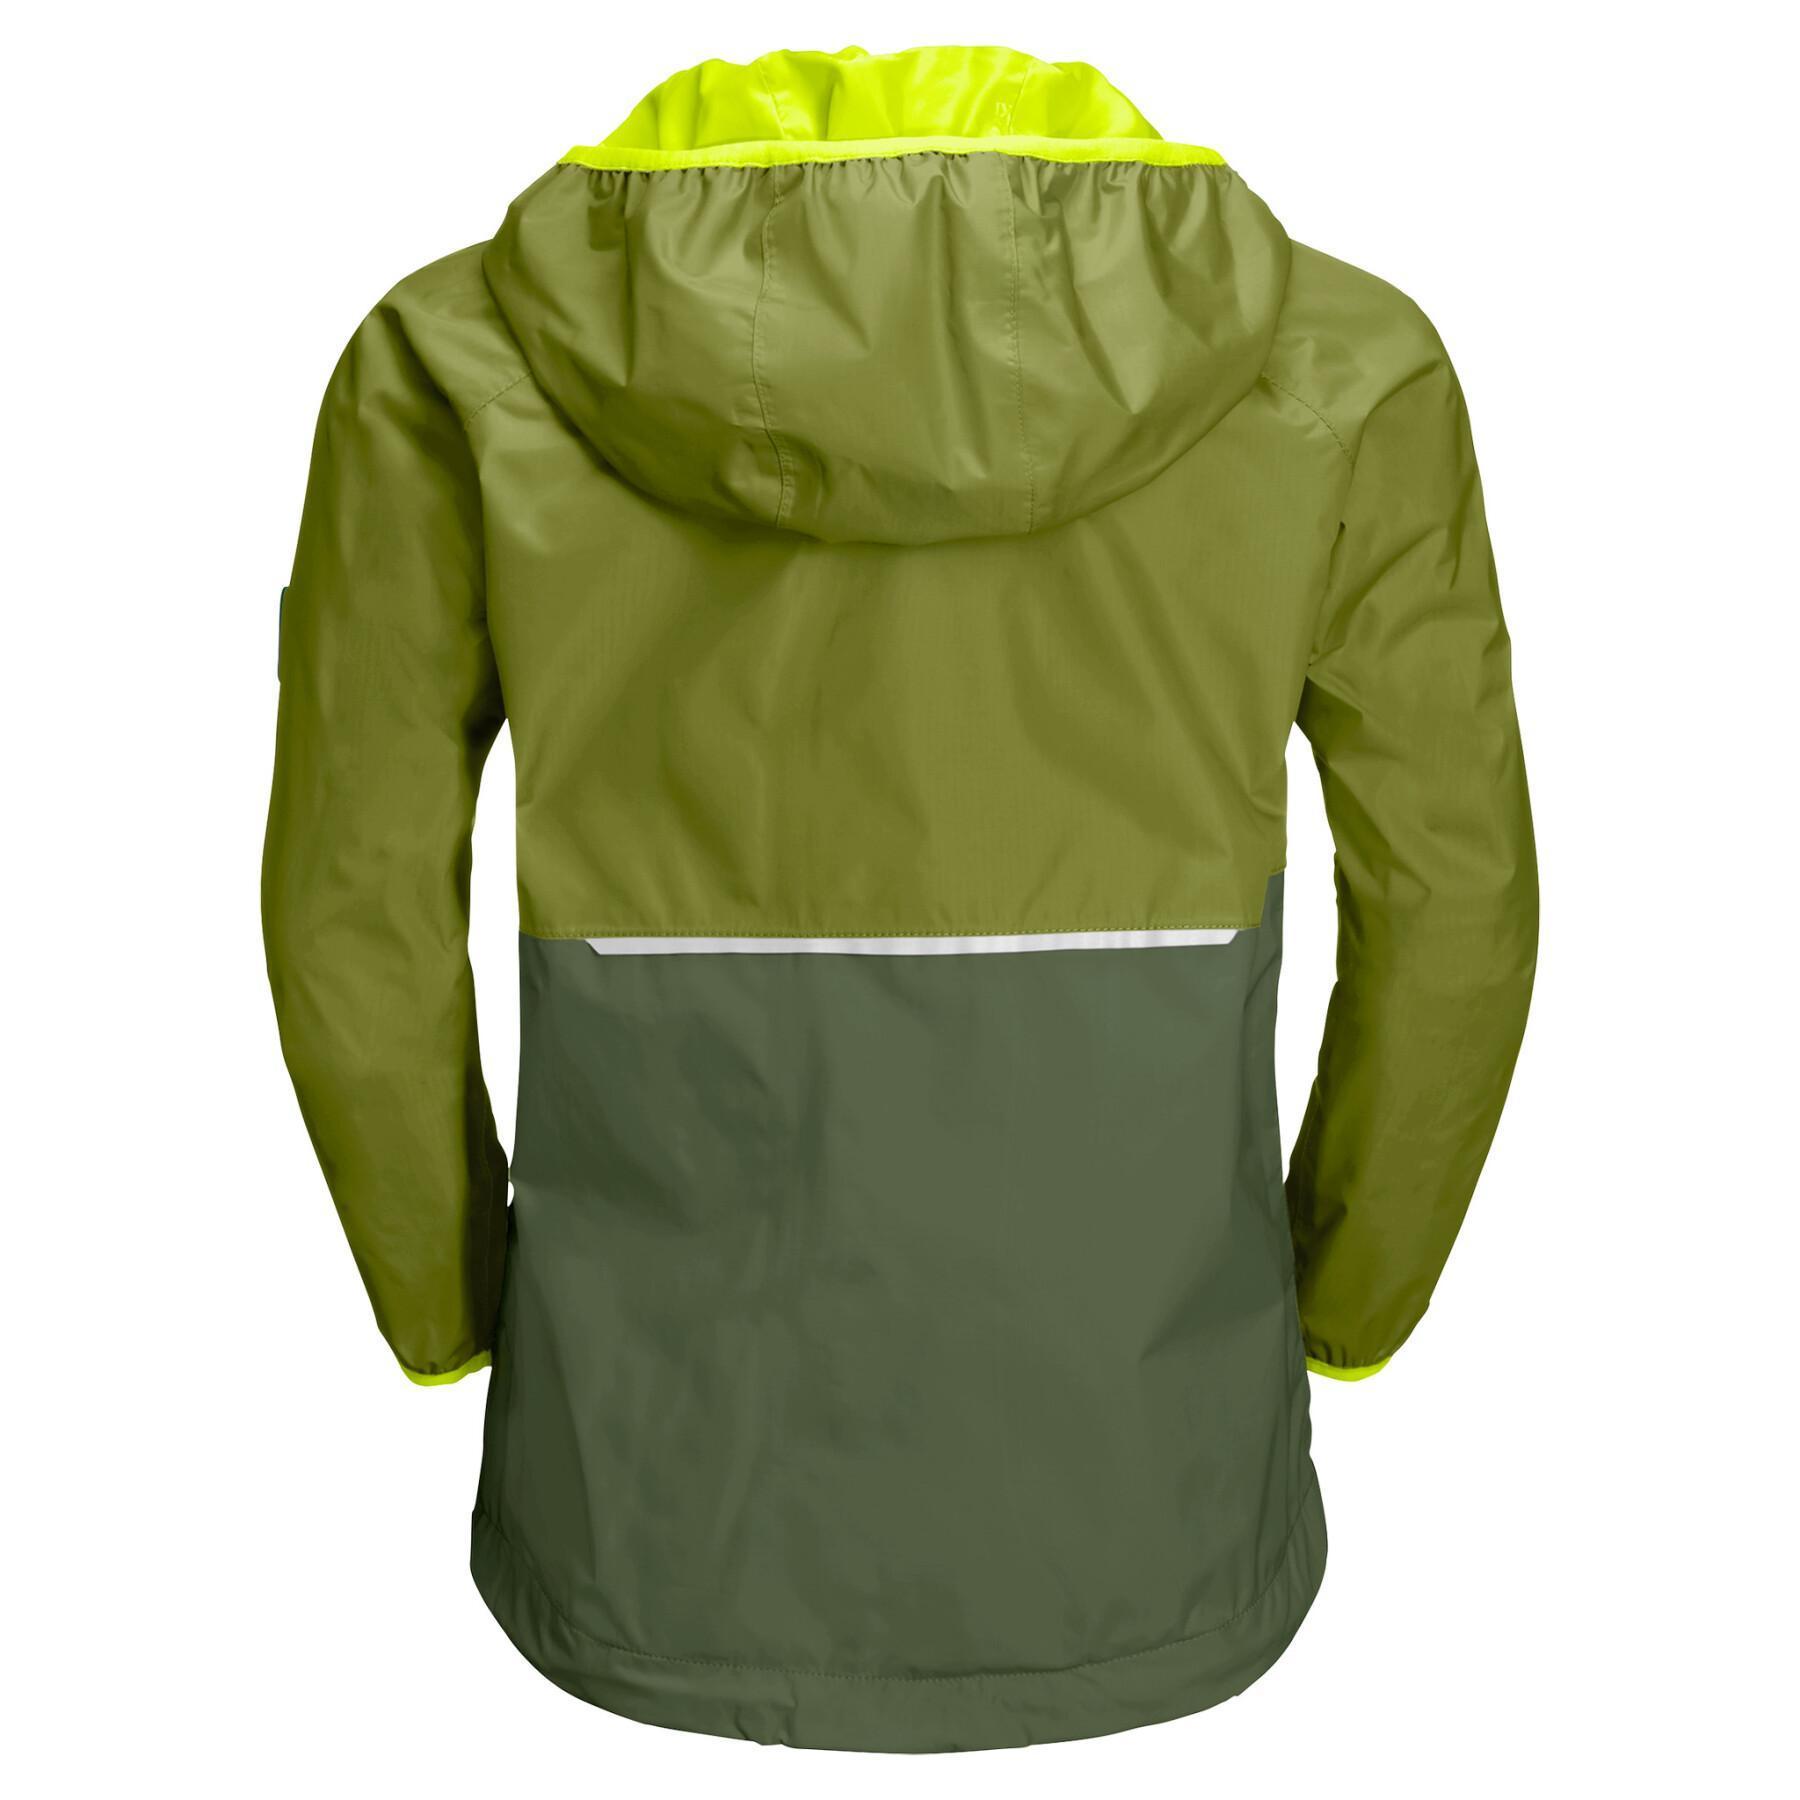 Waterproof jacket for children Jack Wolfskin Rainy Days